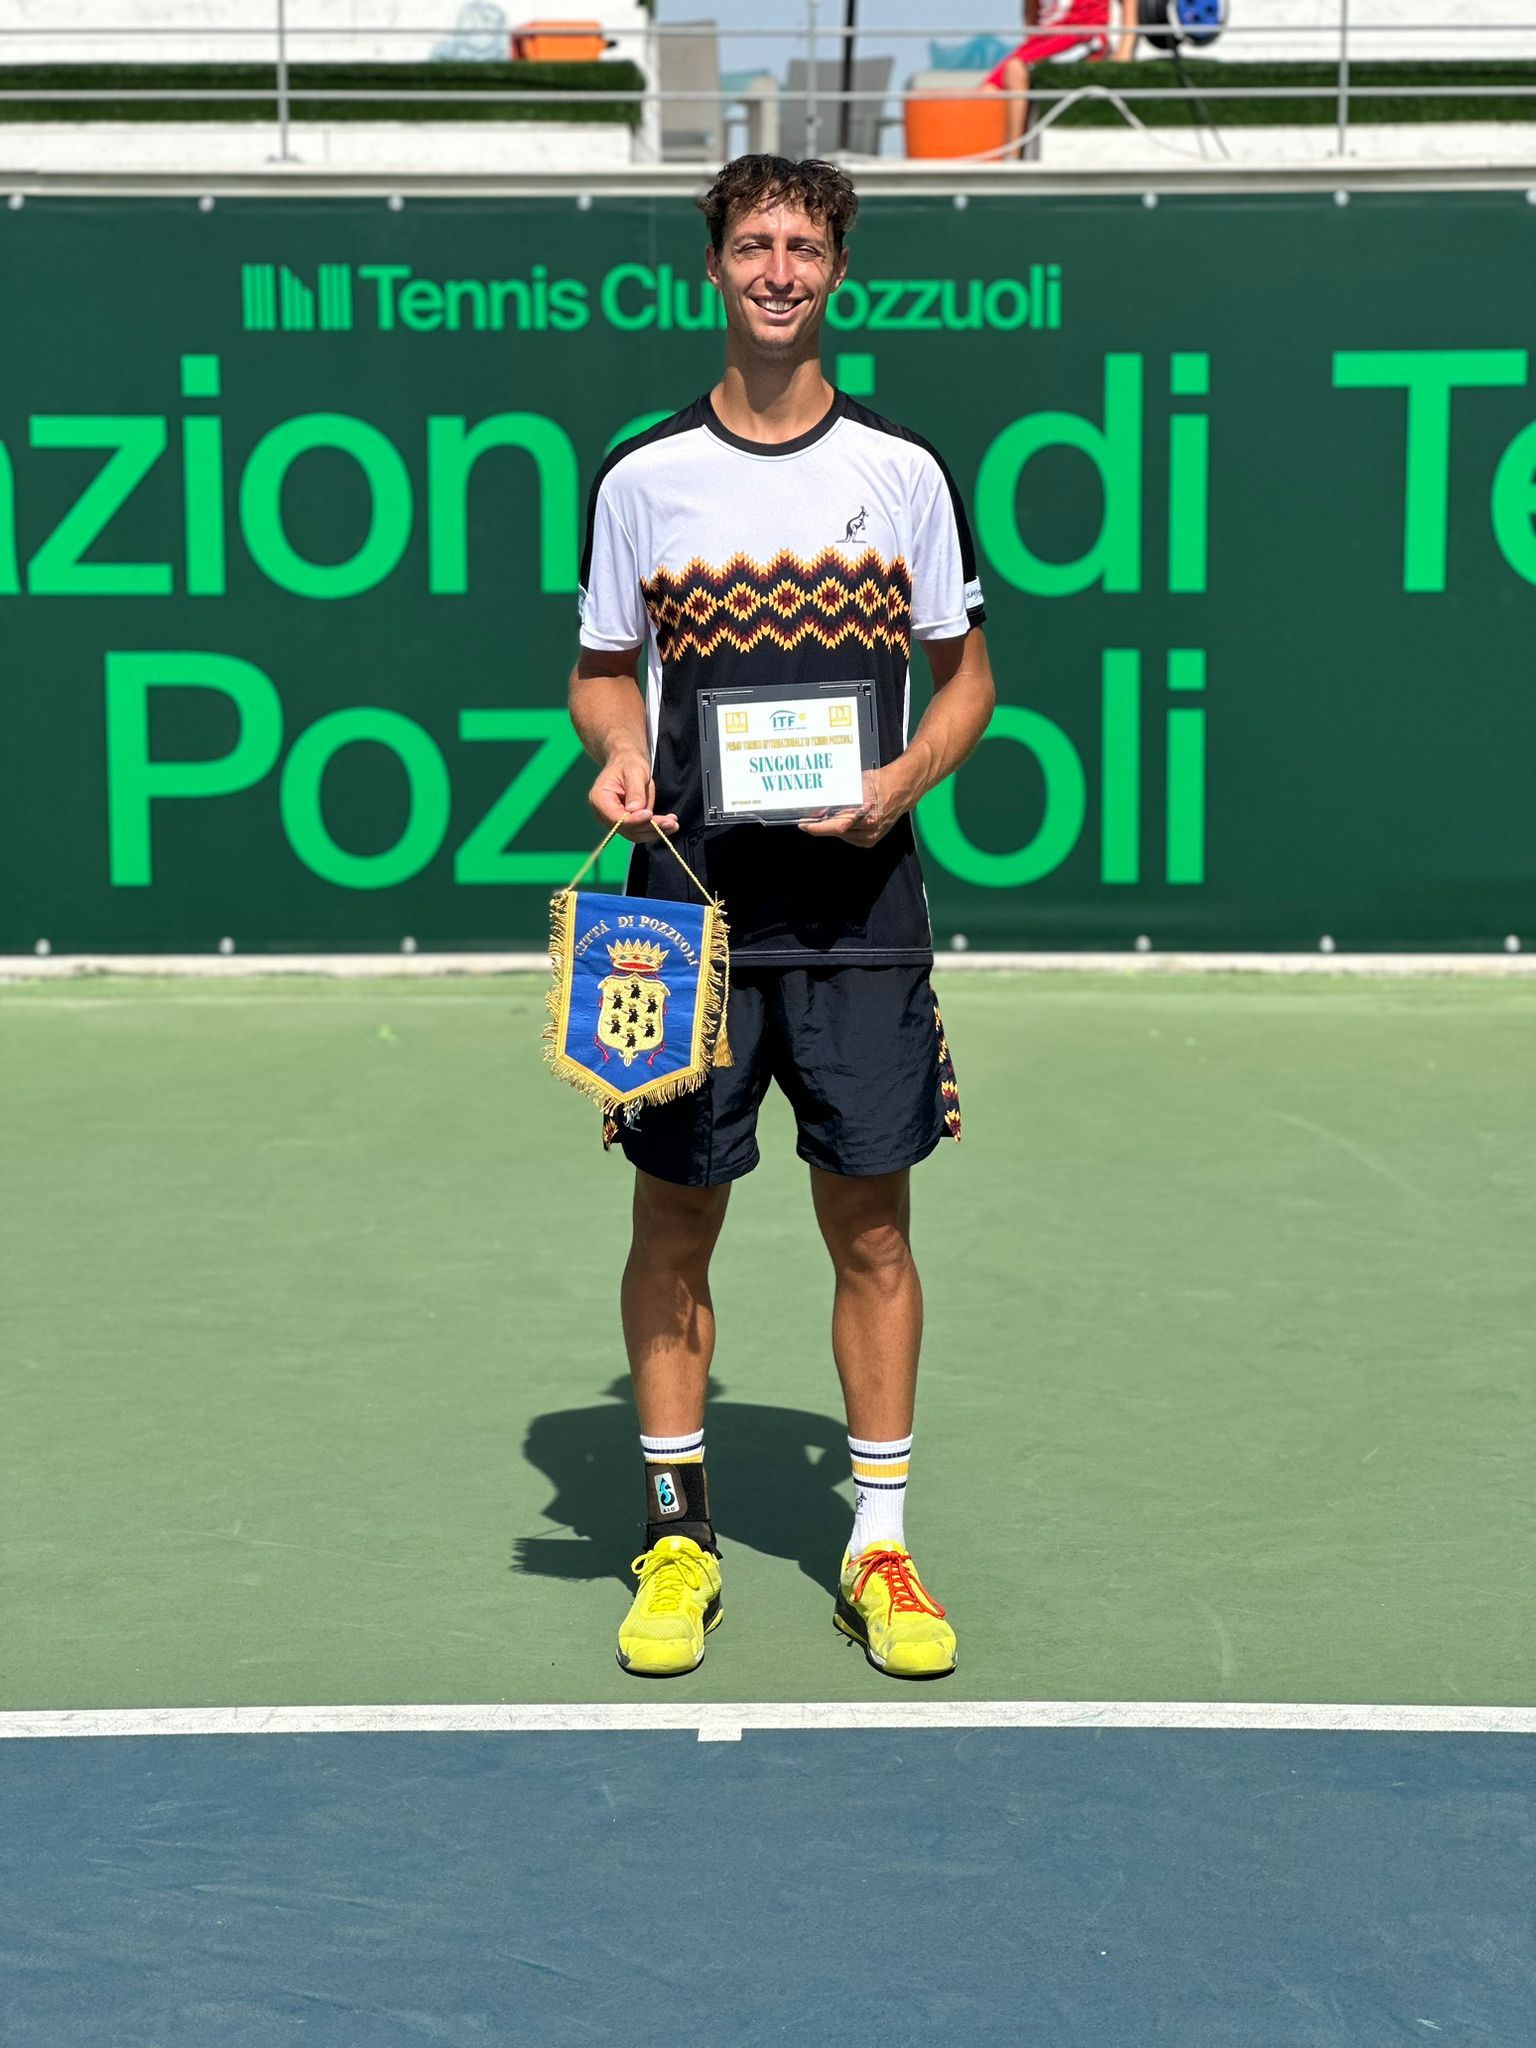 Francesco Forti vincente a Pozzuoli in singolo e doppio